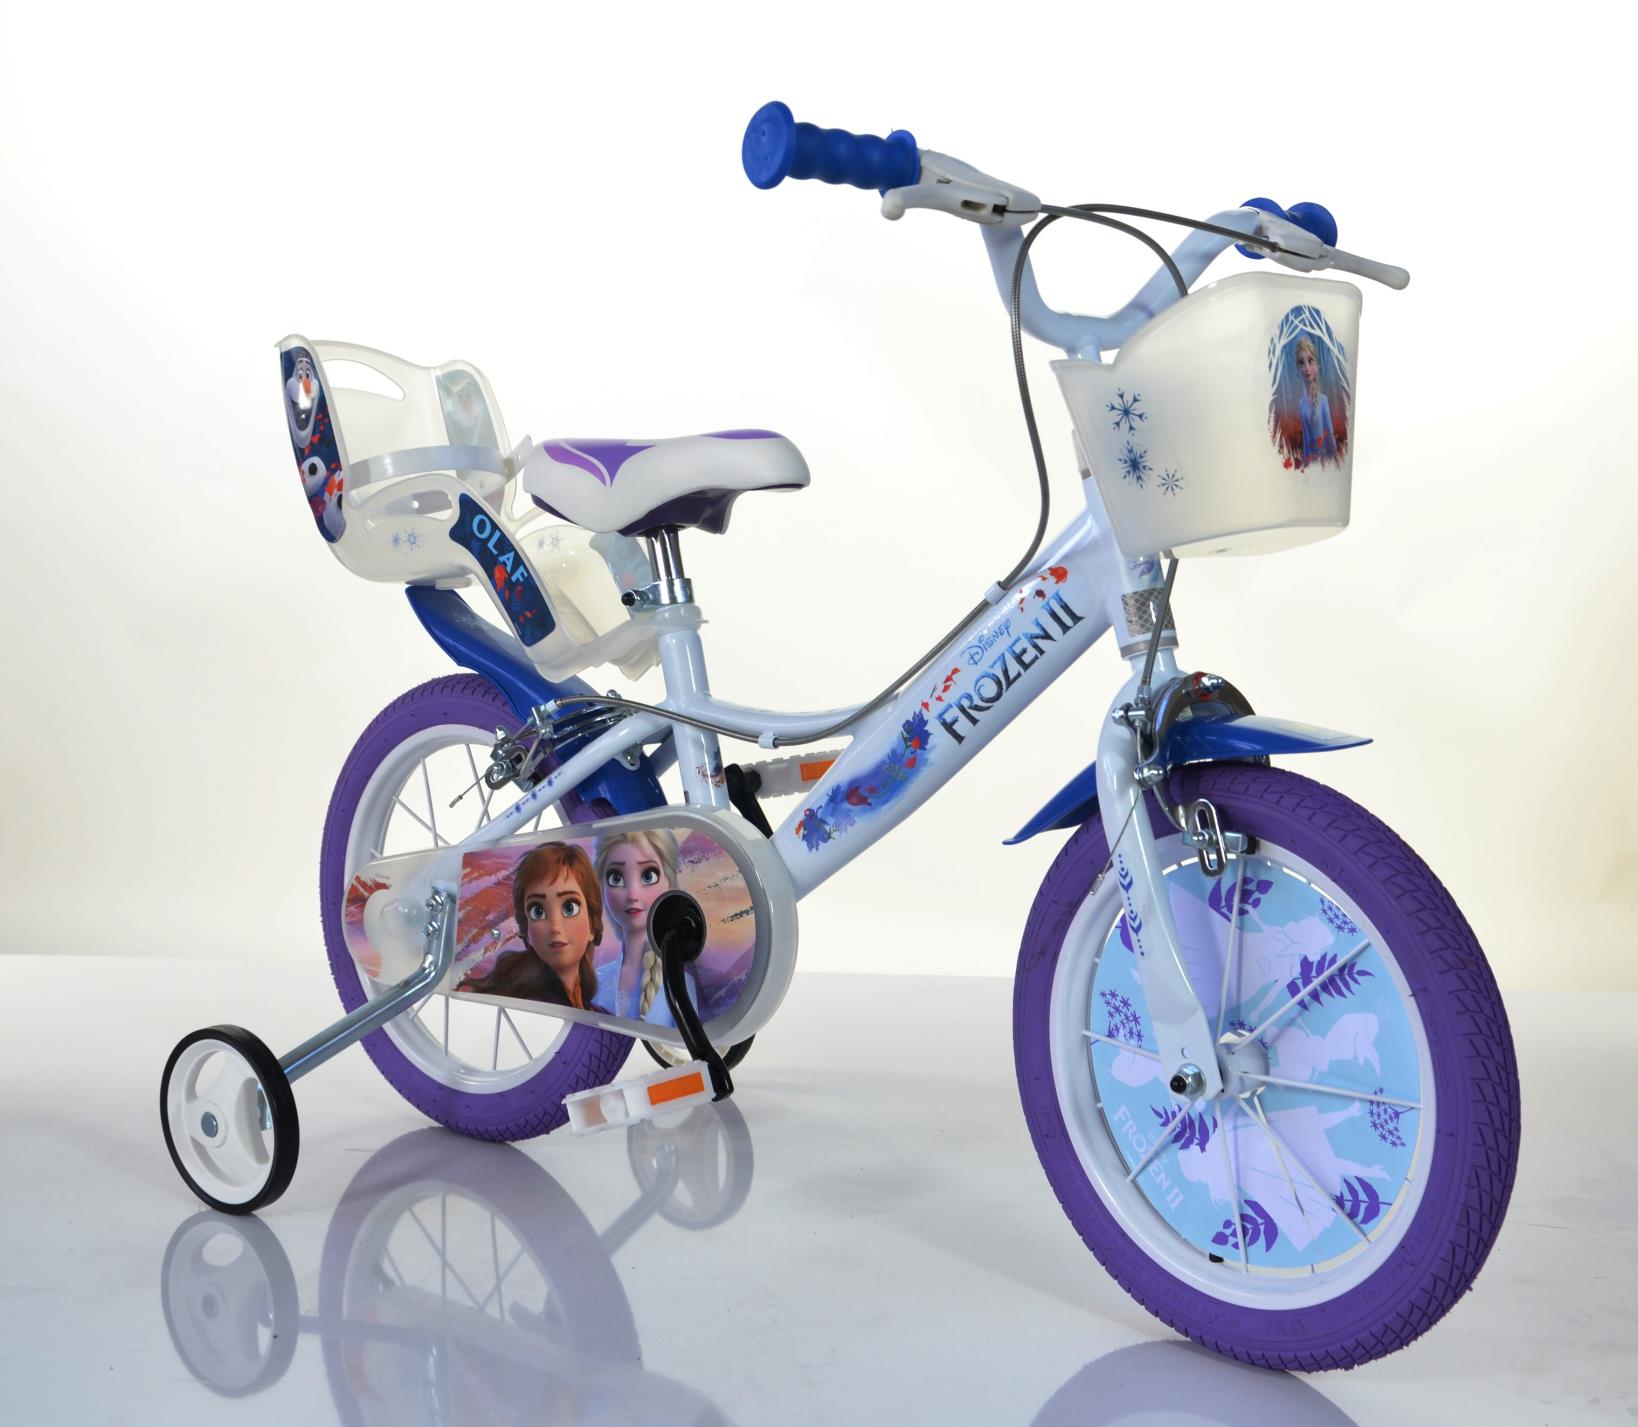 16 Zoll Kinder Kinderfahrrad Mädchenfahrrad Fahrrad Frozen Disney Eiskönigin 